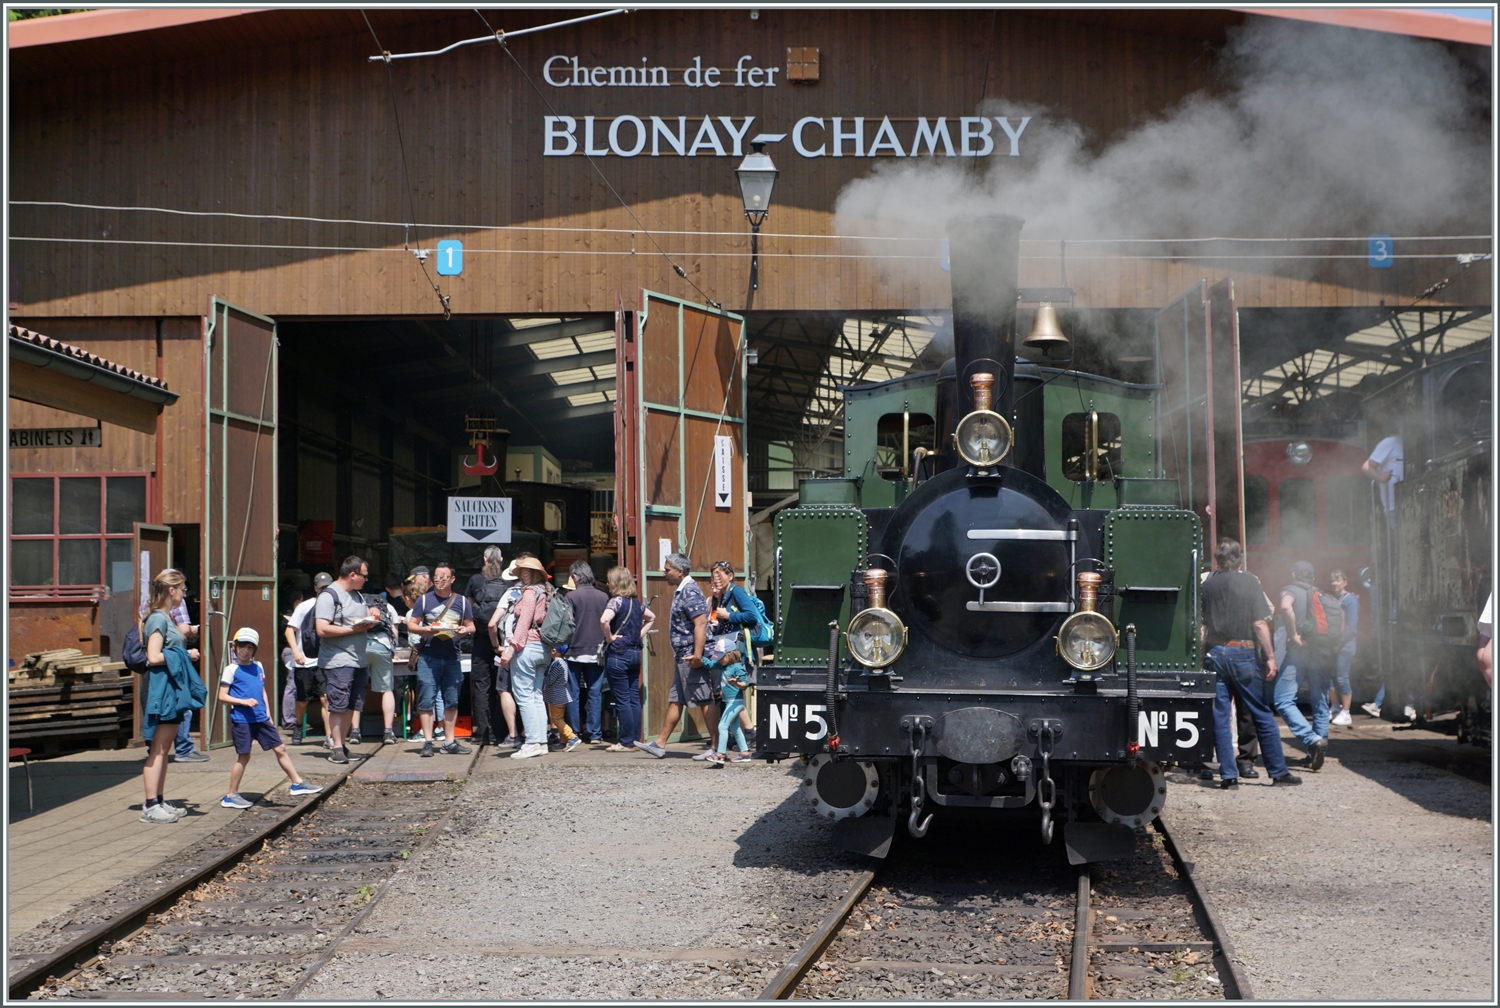 Festival Suisse de la vapeur (Schweizer Dampffestival) 2023 - Immer wieder faszinierend, dass eine 1890 gebaute Lok heute noch funktioniert. Die LEB G 3/3 N° 5 der Blonay - Chamby Bahn dampf zufrieden vor sich hin.   

29. Mai 2023 